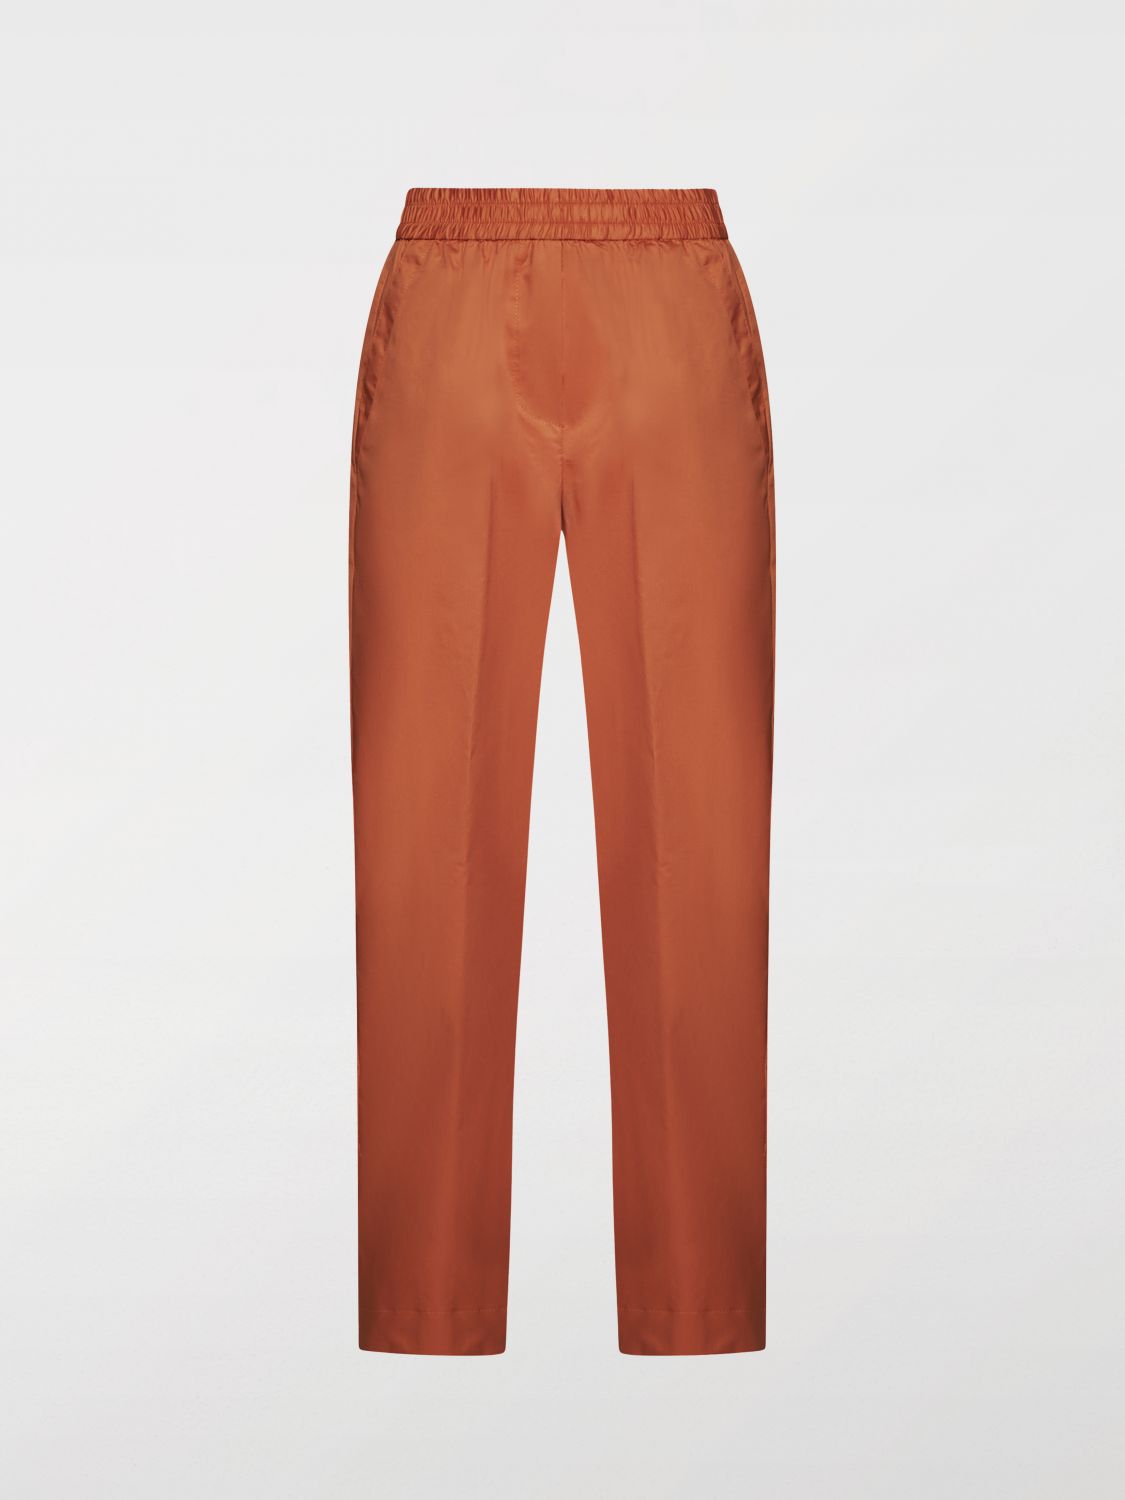 Kaos Pants  Woman Color Orange